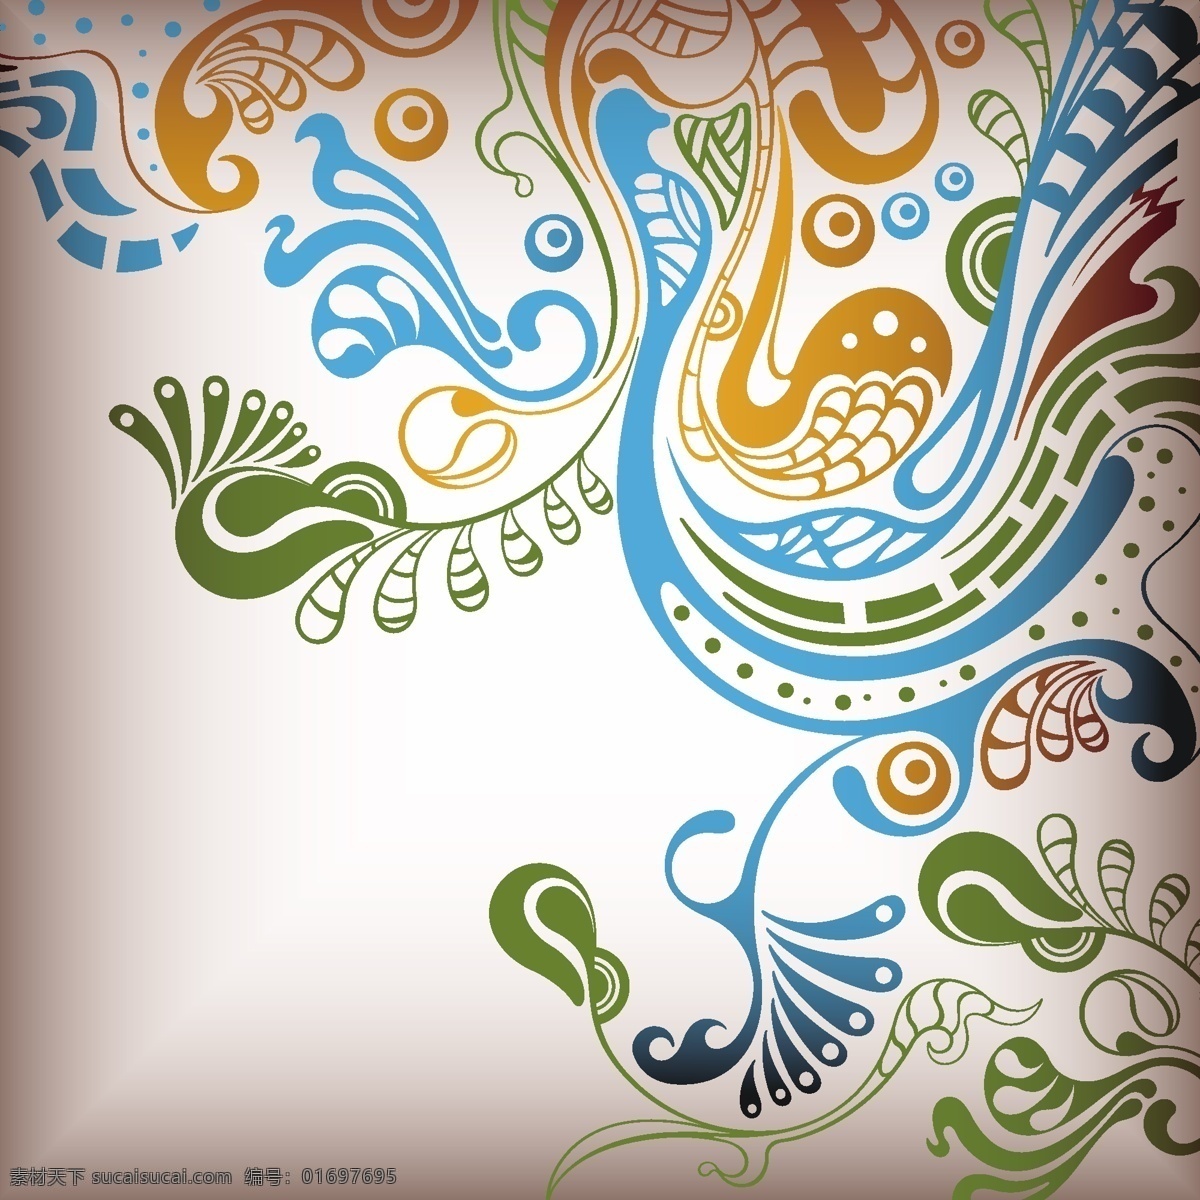 凤凰 花纹 矢量 孔雀 背景 古典 中国风 矢量素材 花纹花边 底纹边框